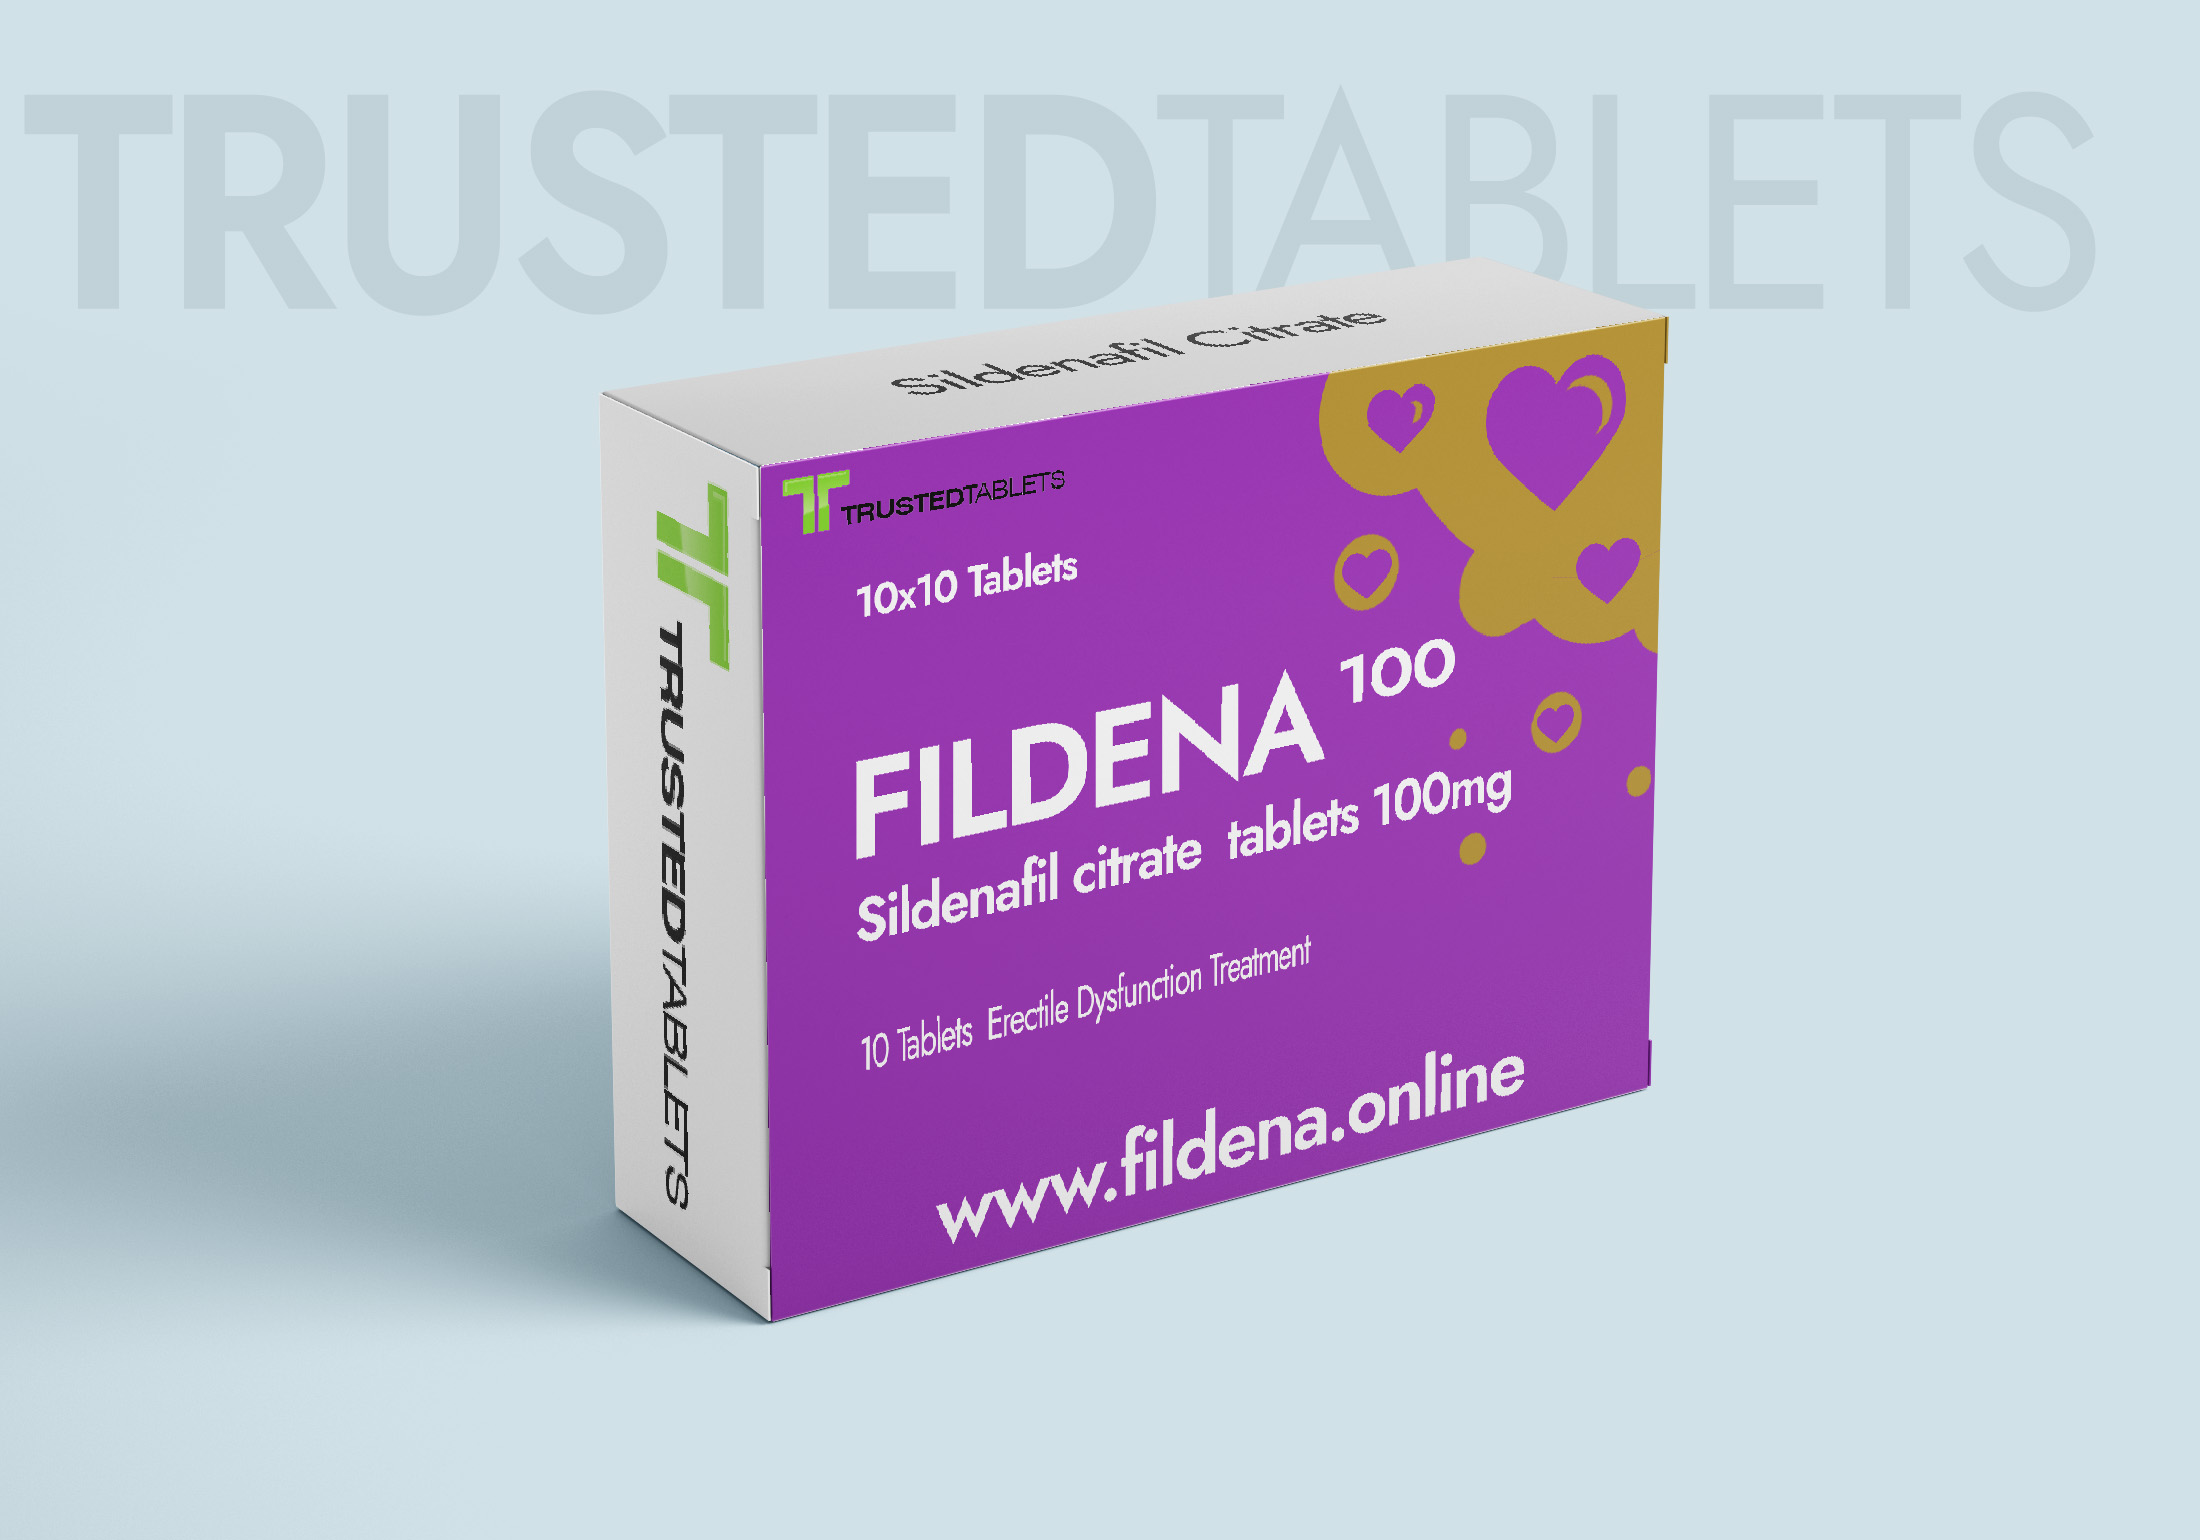 Fildena TrustedTablets